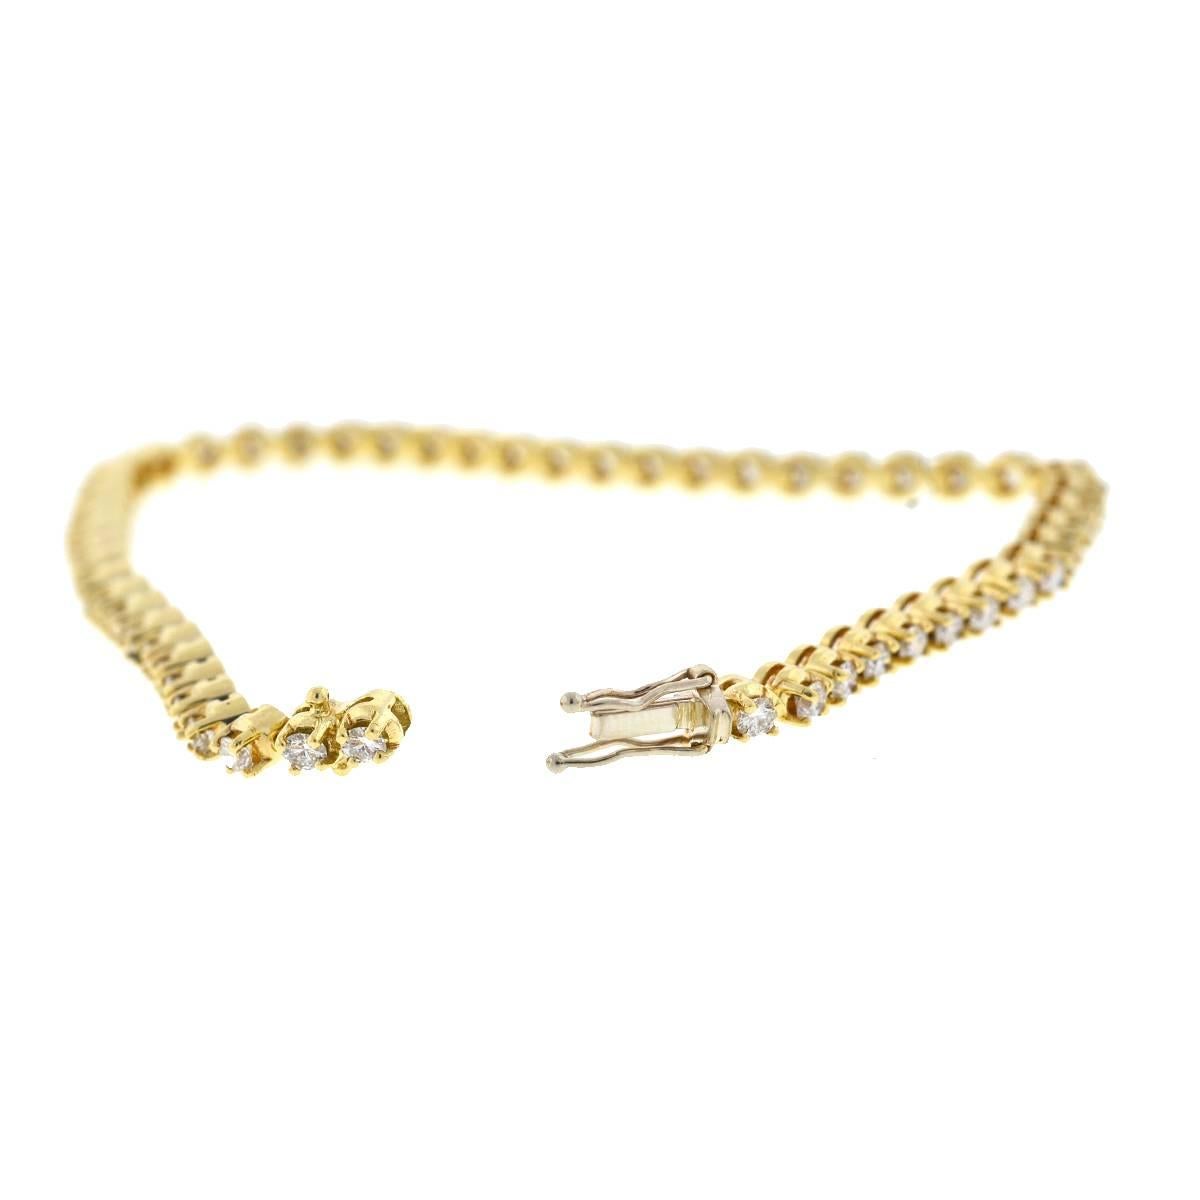 Company-N/A
Style-Diamond Tennis Bracelet
Metal-14k Yellow Gold
Size-7.5